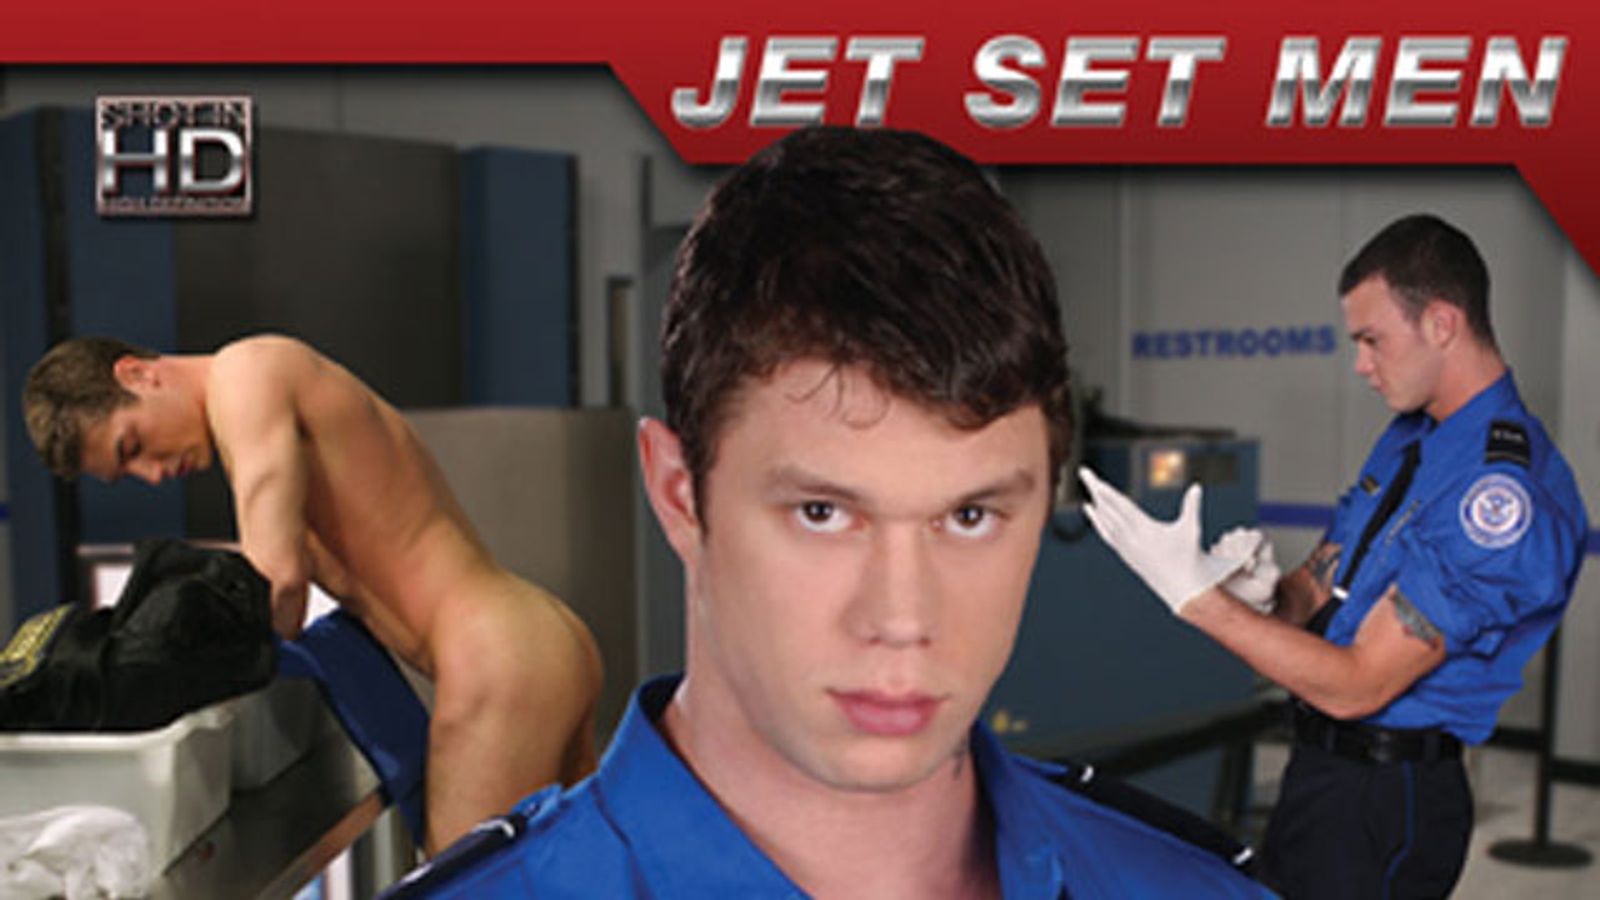 Jet Set Men Streets ‘TSA-Strip Down’